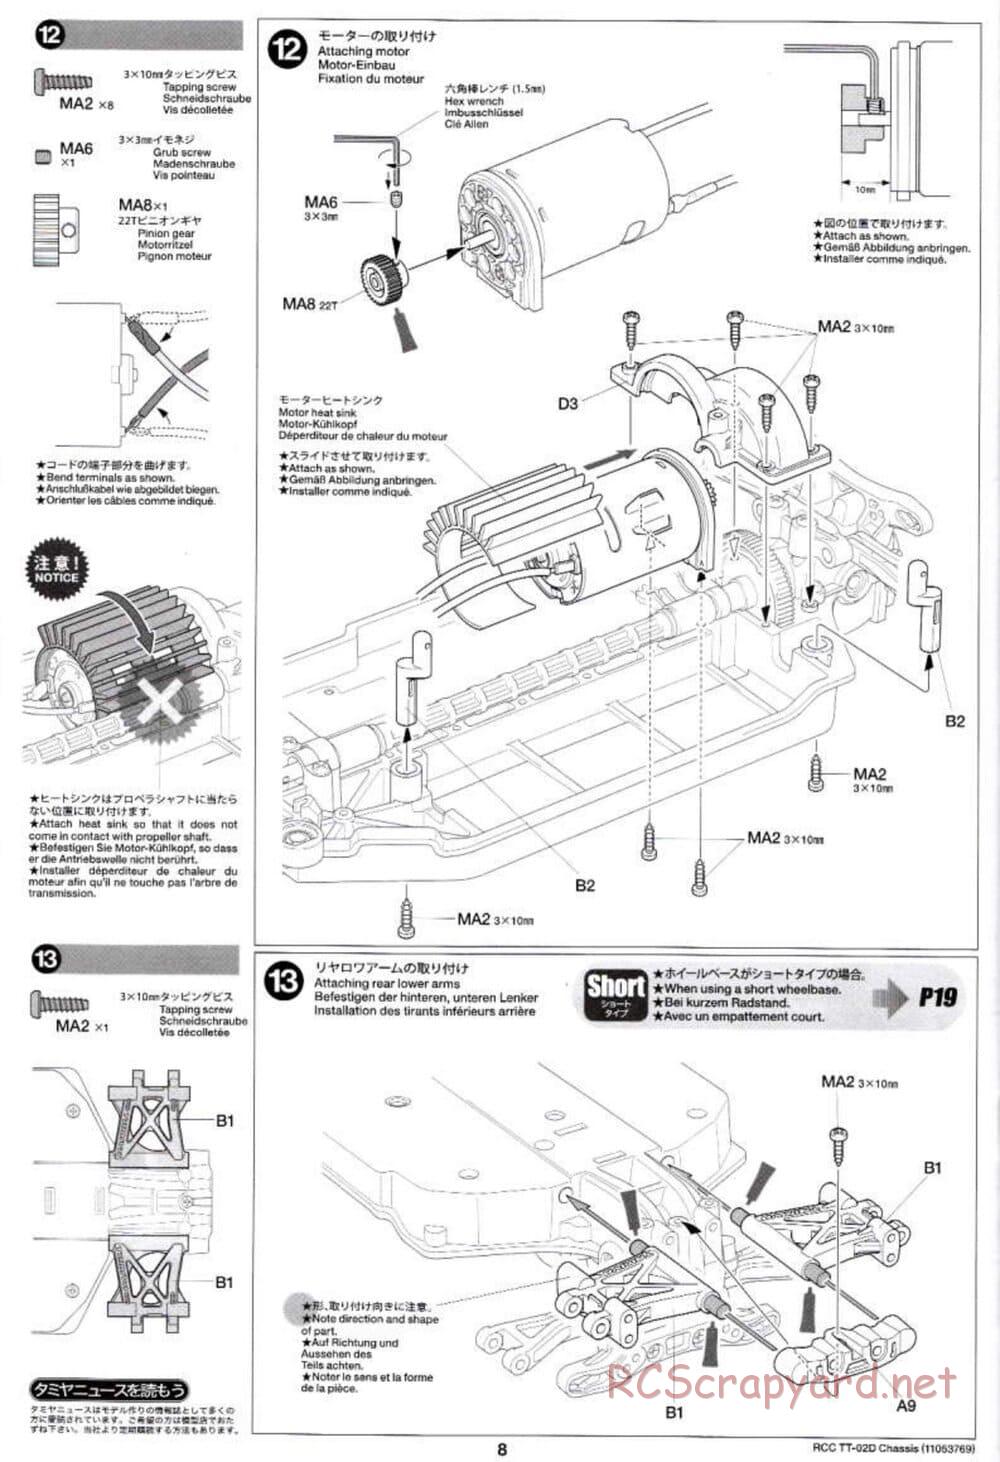 Tamiya - TT-02D Chassis - Manual - Page 8